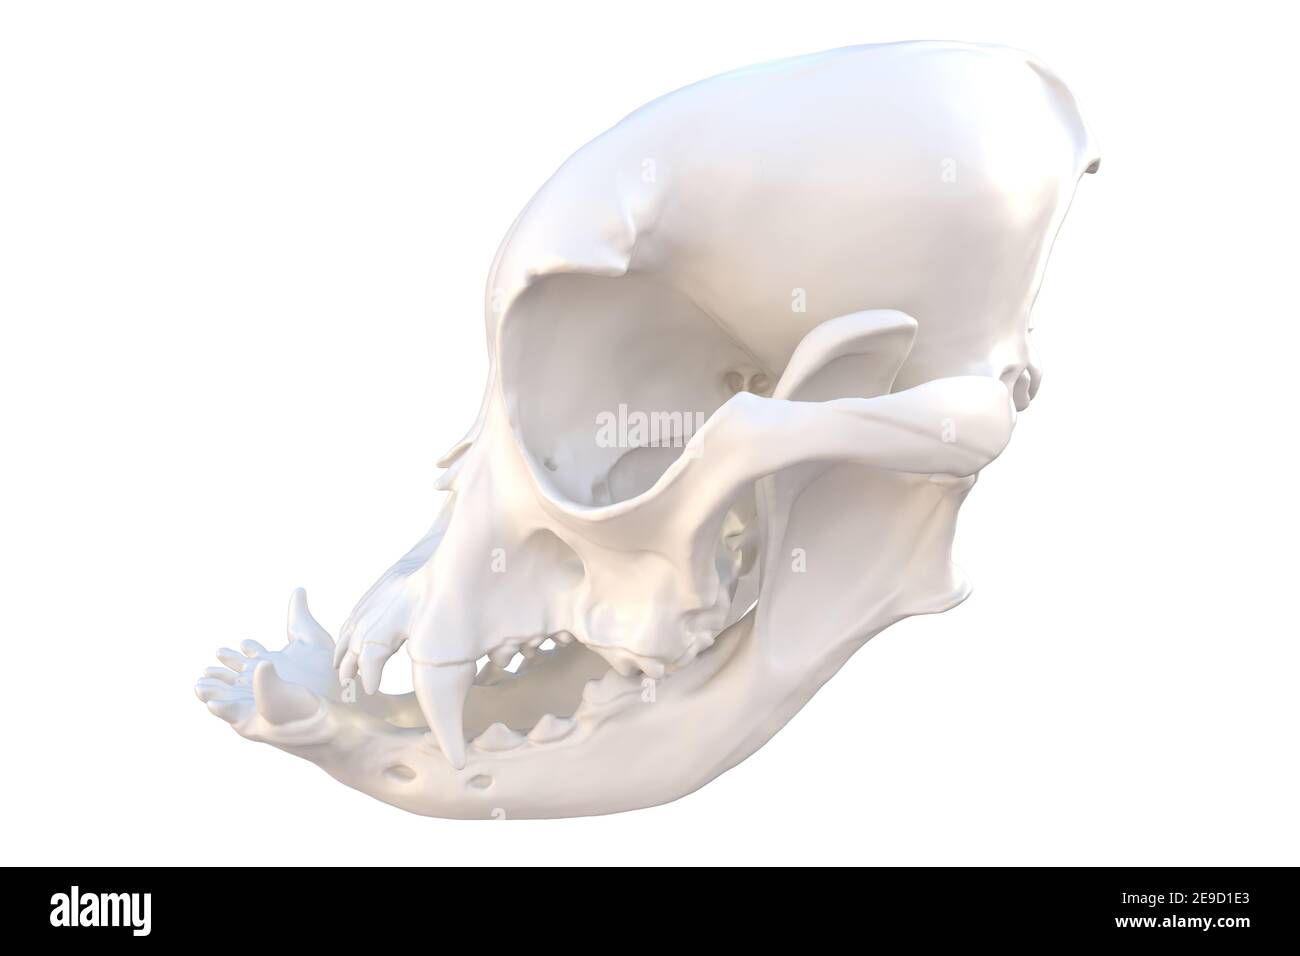 Squelette de crâne de chien canin, chien de taureau français avec des caractéristiques brachycéphaliques, isolé sur blanc, illustration 3d Banque D'Images